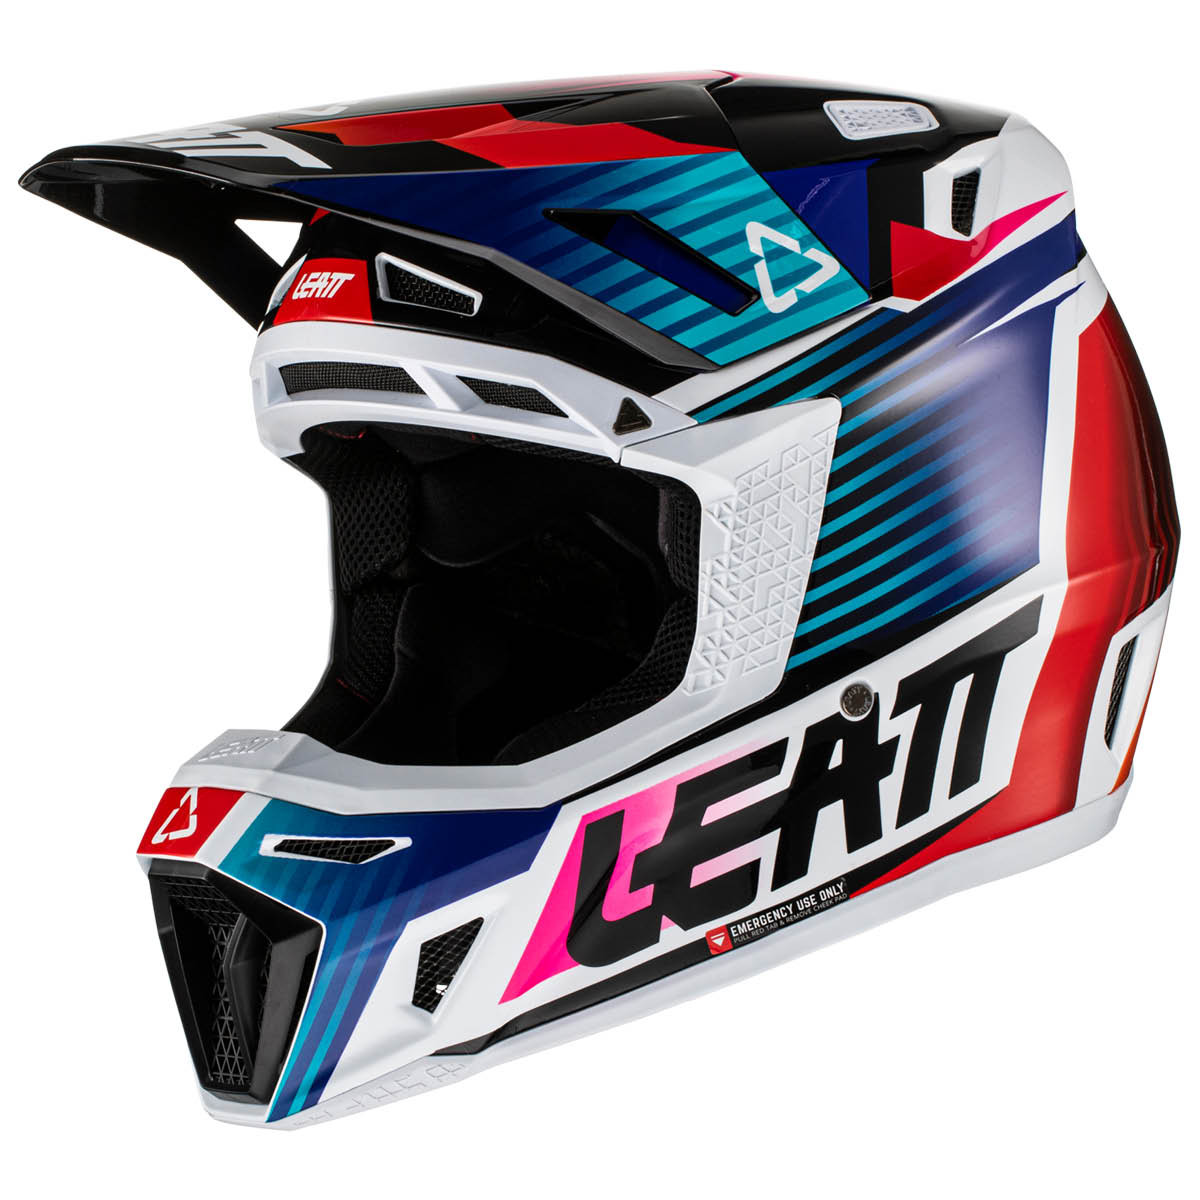 LEATT Motocross Helm Moto 8.5 V22 inkl. Brille, XL royal